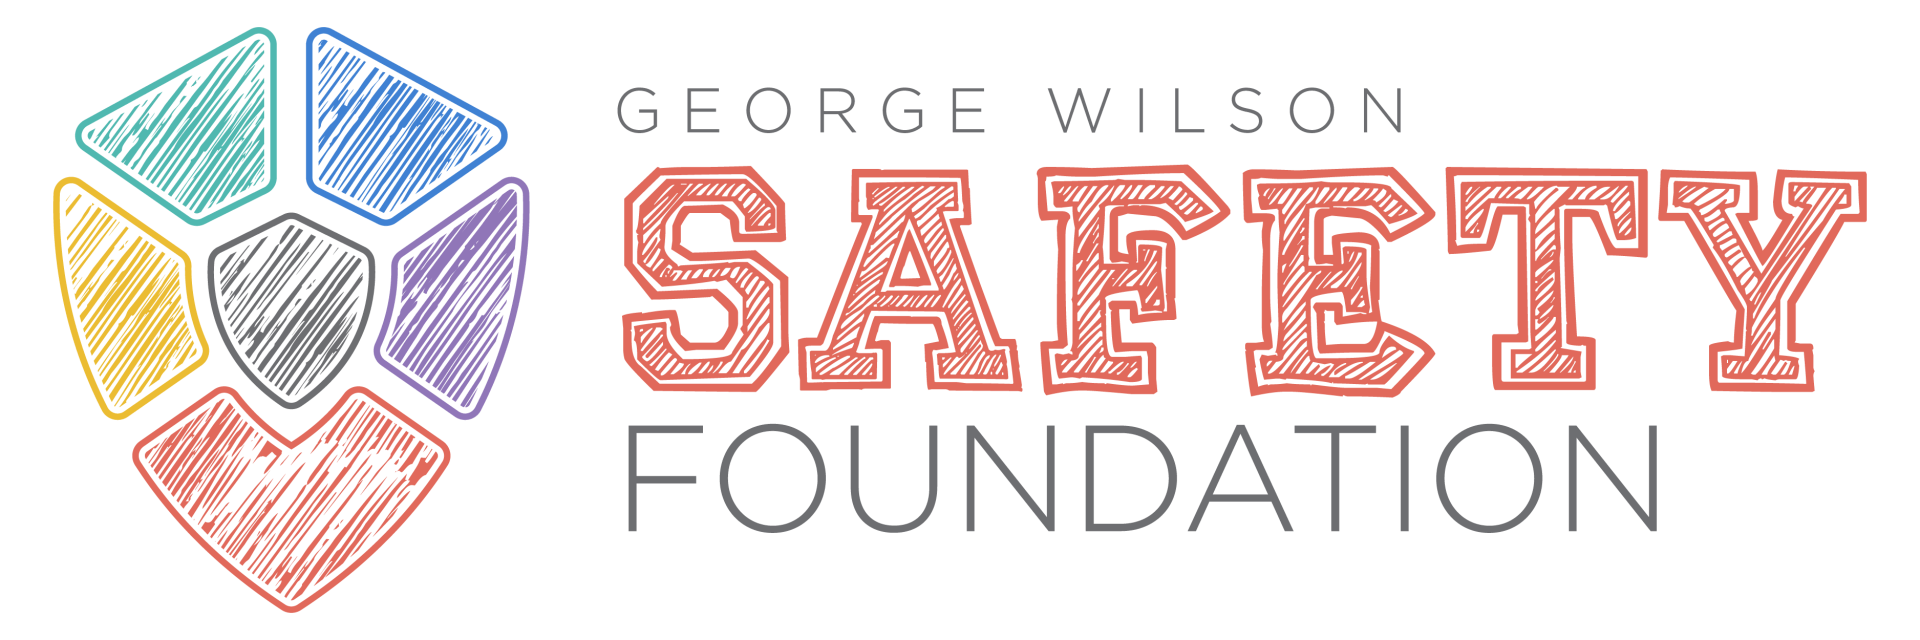 GW SAFETY Foundation logo